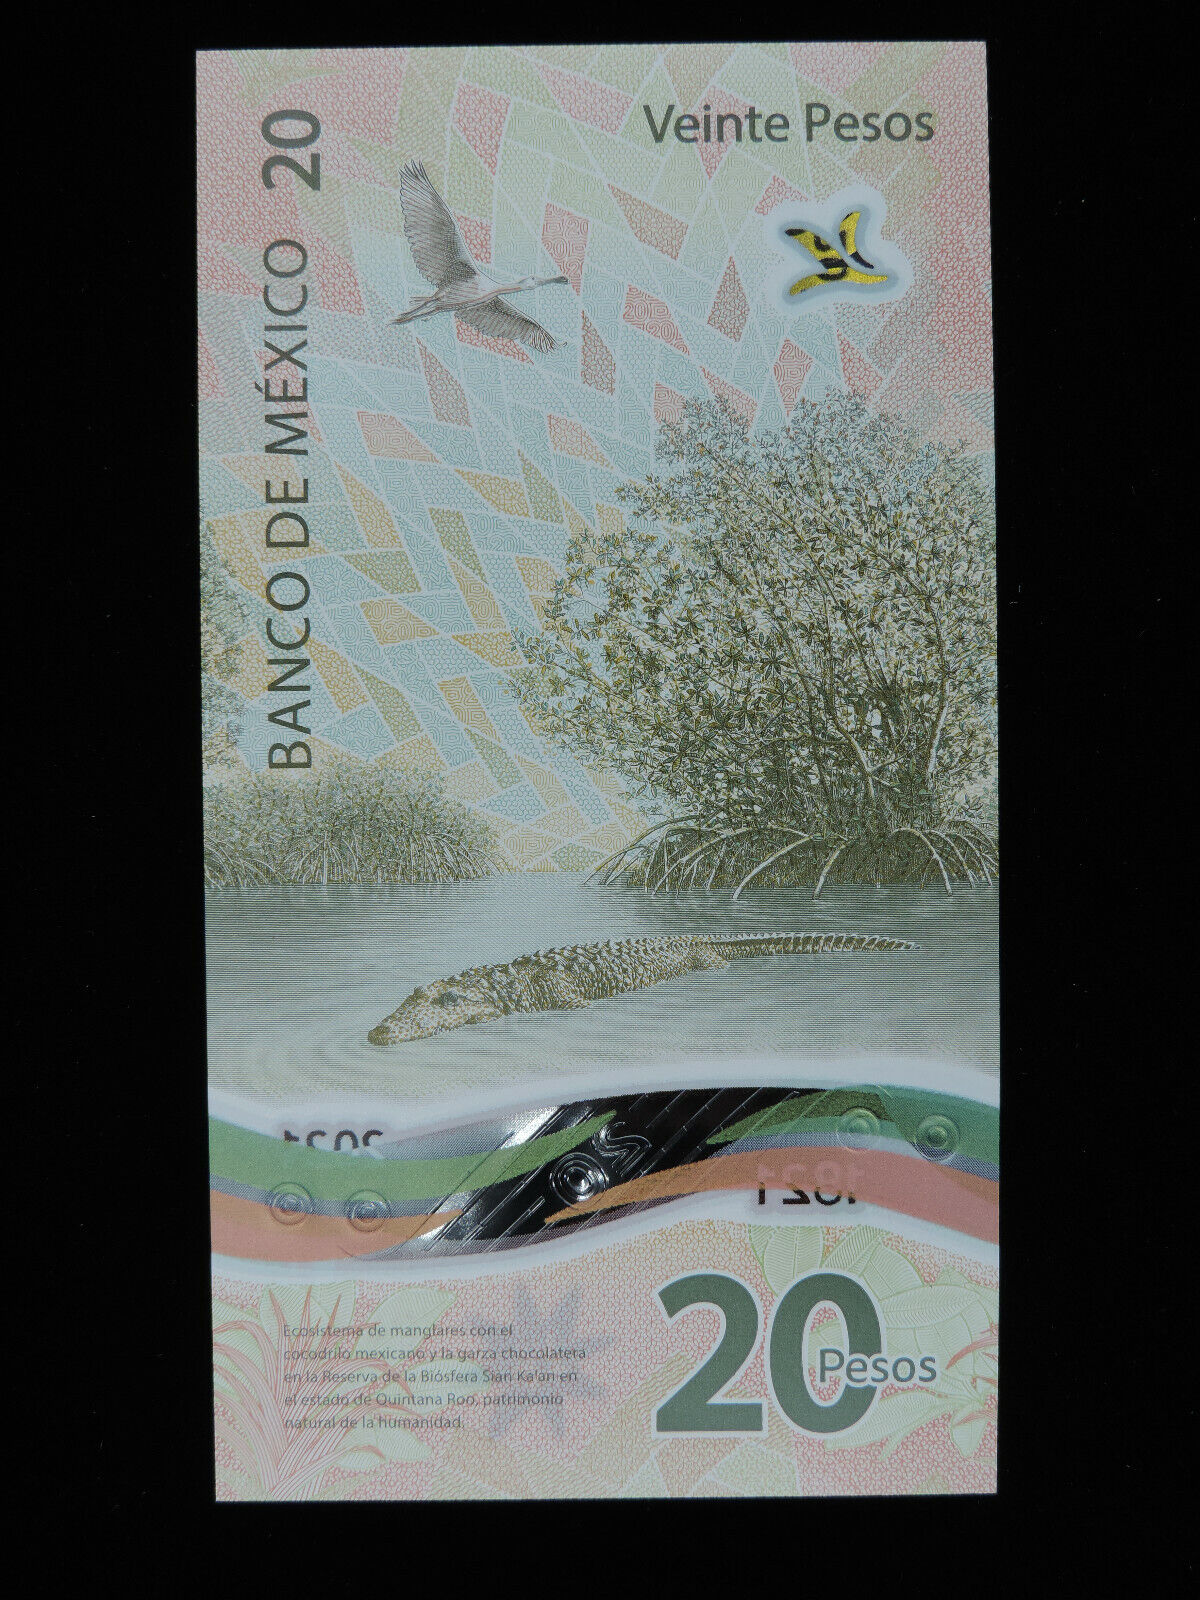 1821 2021 20 Mexican Pesos Bank Note Bicentennial AJ 6372763 Bookend Note Mexico